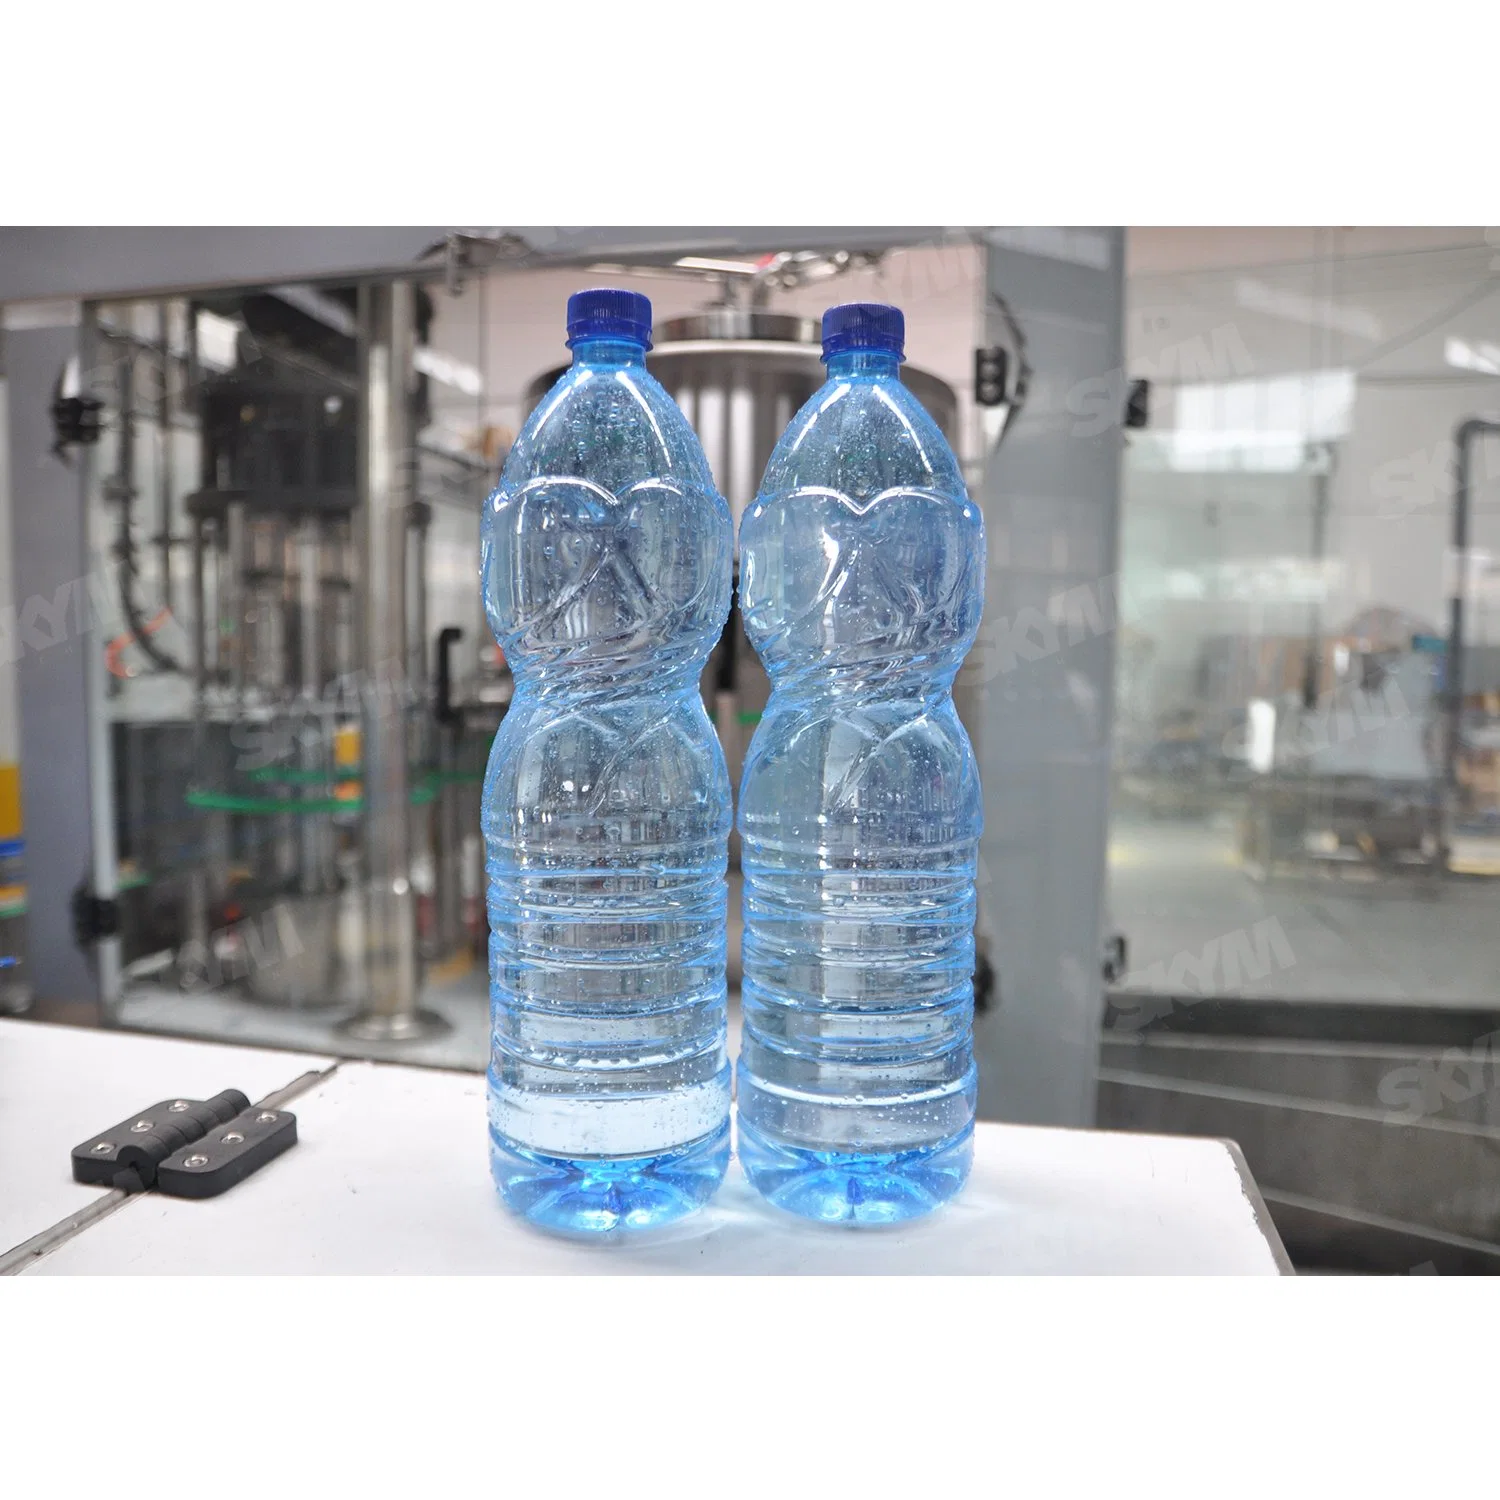 330ml 500ml 1500ml Kunststoff Glas PET Flasche automatisch trinken Mineral Sekt Reines Wasser Flüssiger Alkohol Wein Getränkefüllung Herstellung Abfüllung Maschine